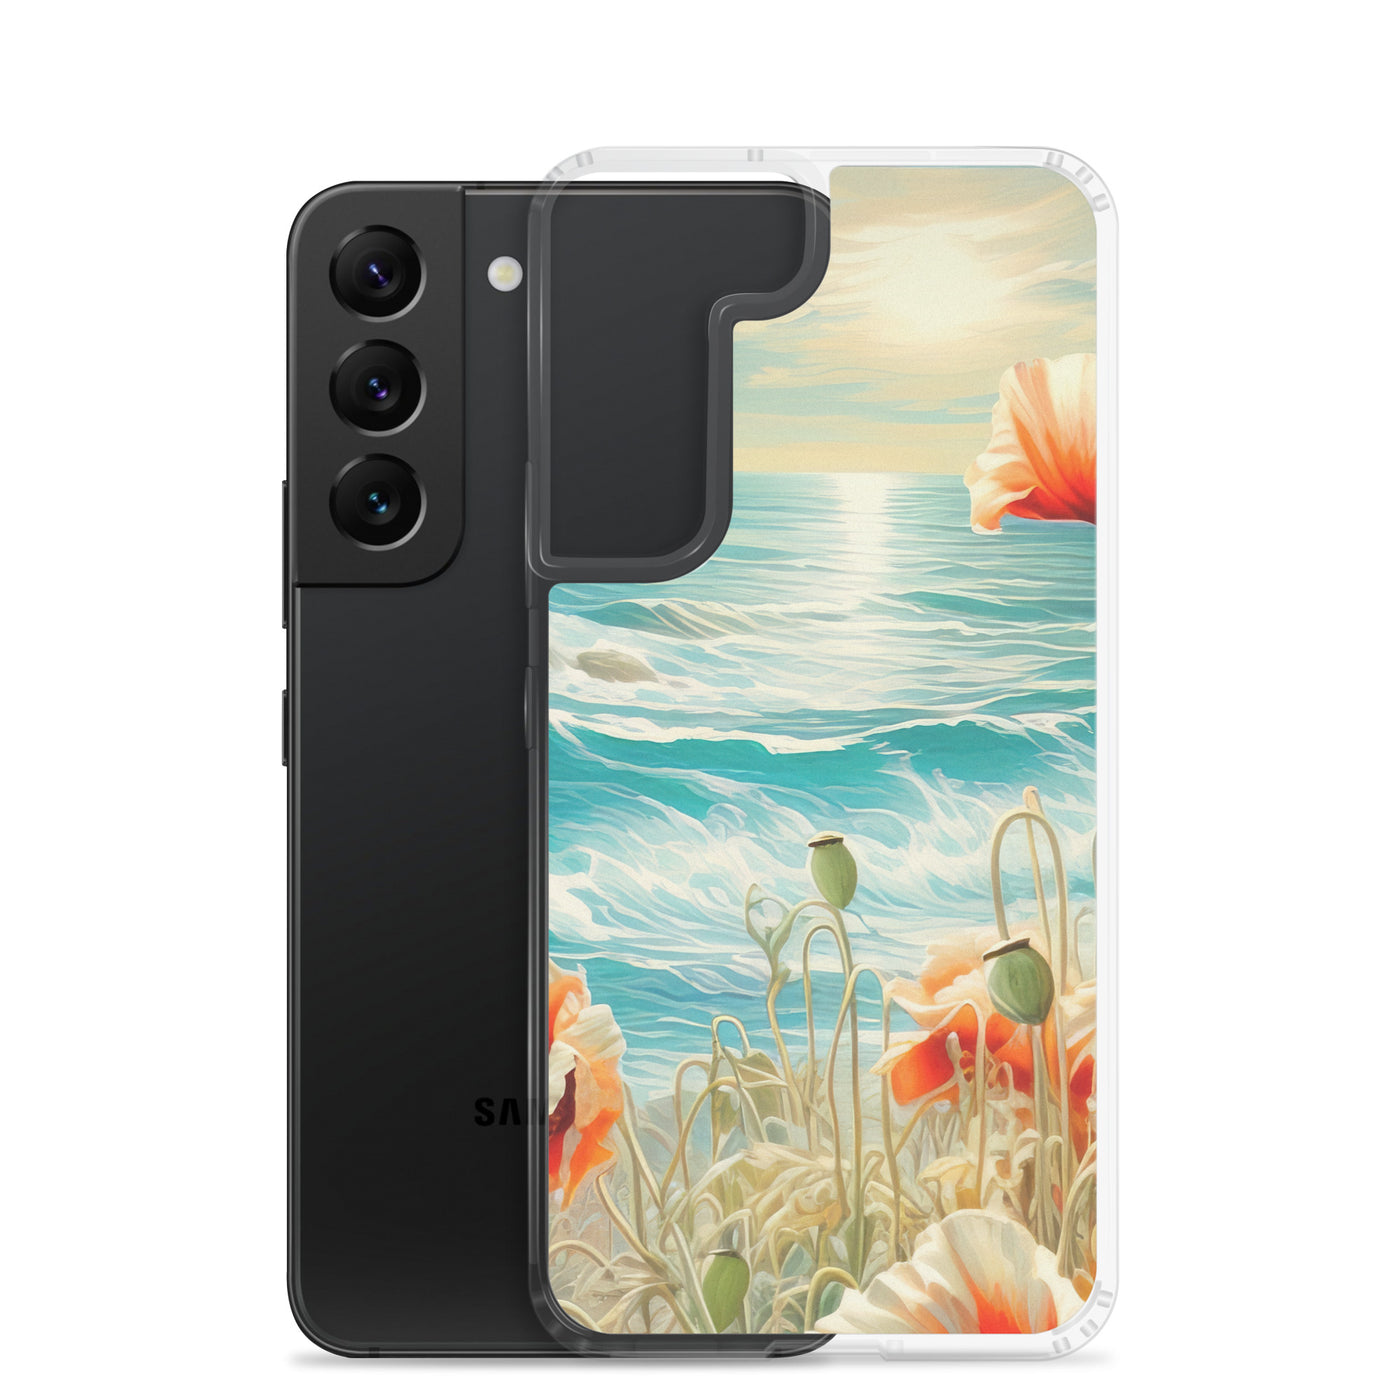 Blumen, Meer und Sonne - Malerei - Samsung Schutzhülle (durchsichtig) camping xxx